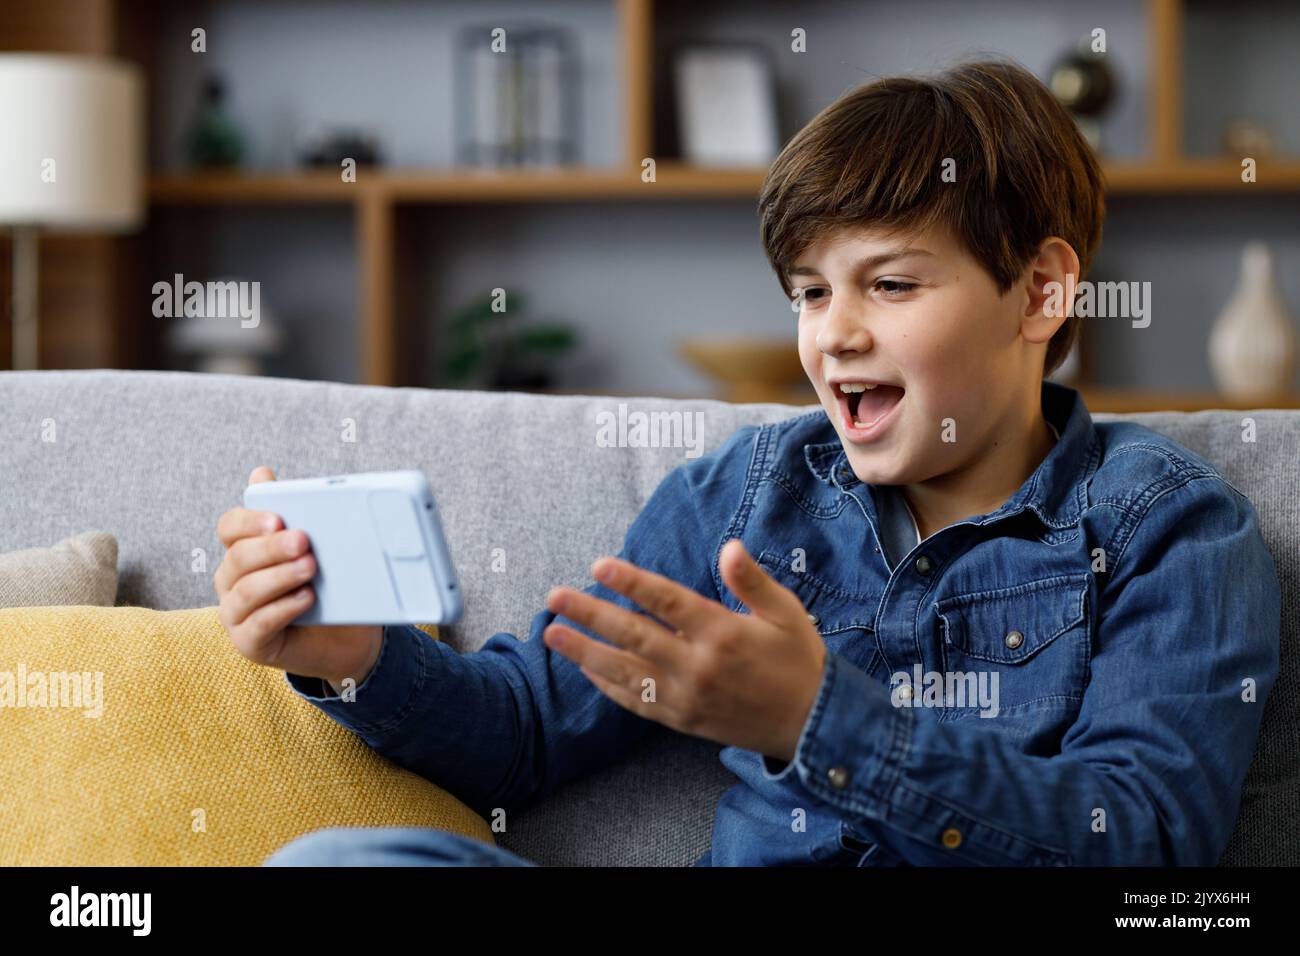 Der Junge reagiert emotional auf das, was auf dem Smartphone-Bildschirm passiert. Teenager verbringen Zeit zu Hause mit digitalen Gadgets. Adoleszenz und Stockfoto